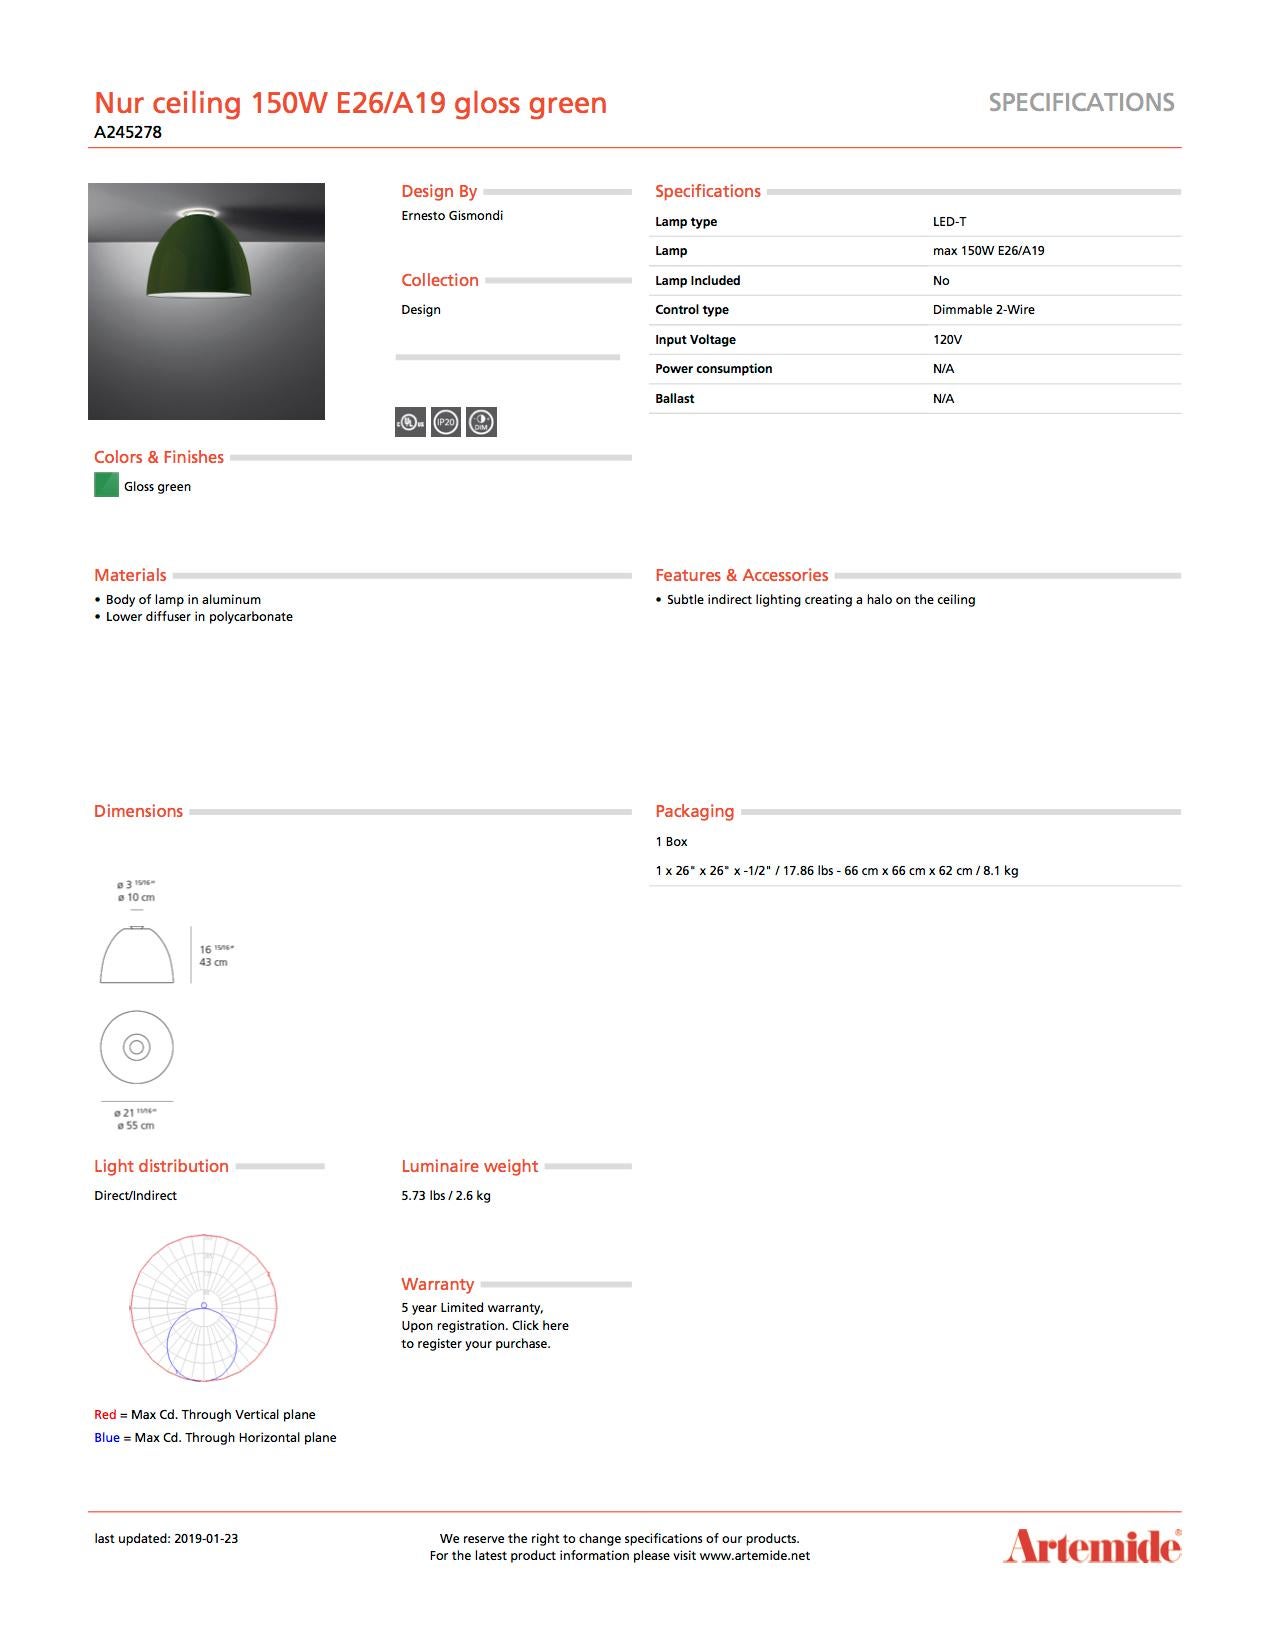 Artemide Nur 150W E26/A19 Deckenleuchte in glänzendem Grün (Moderne) im Angebot